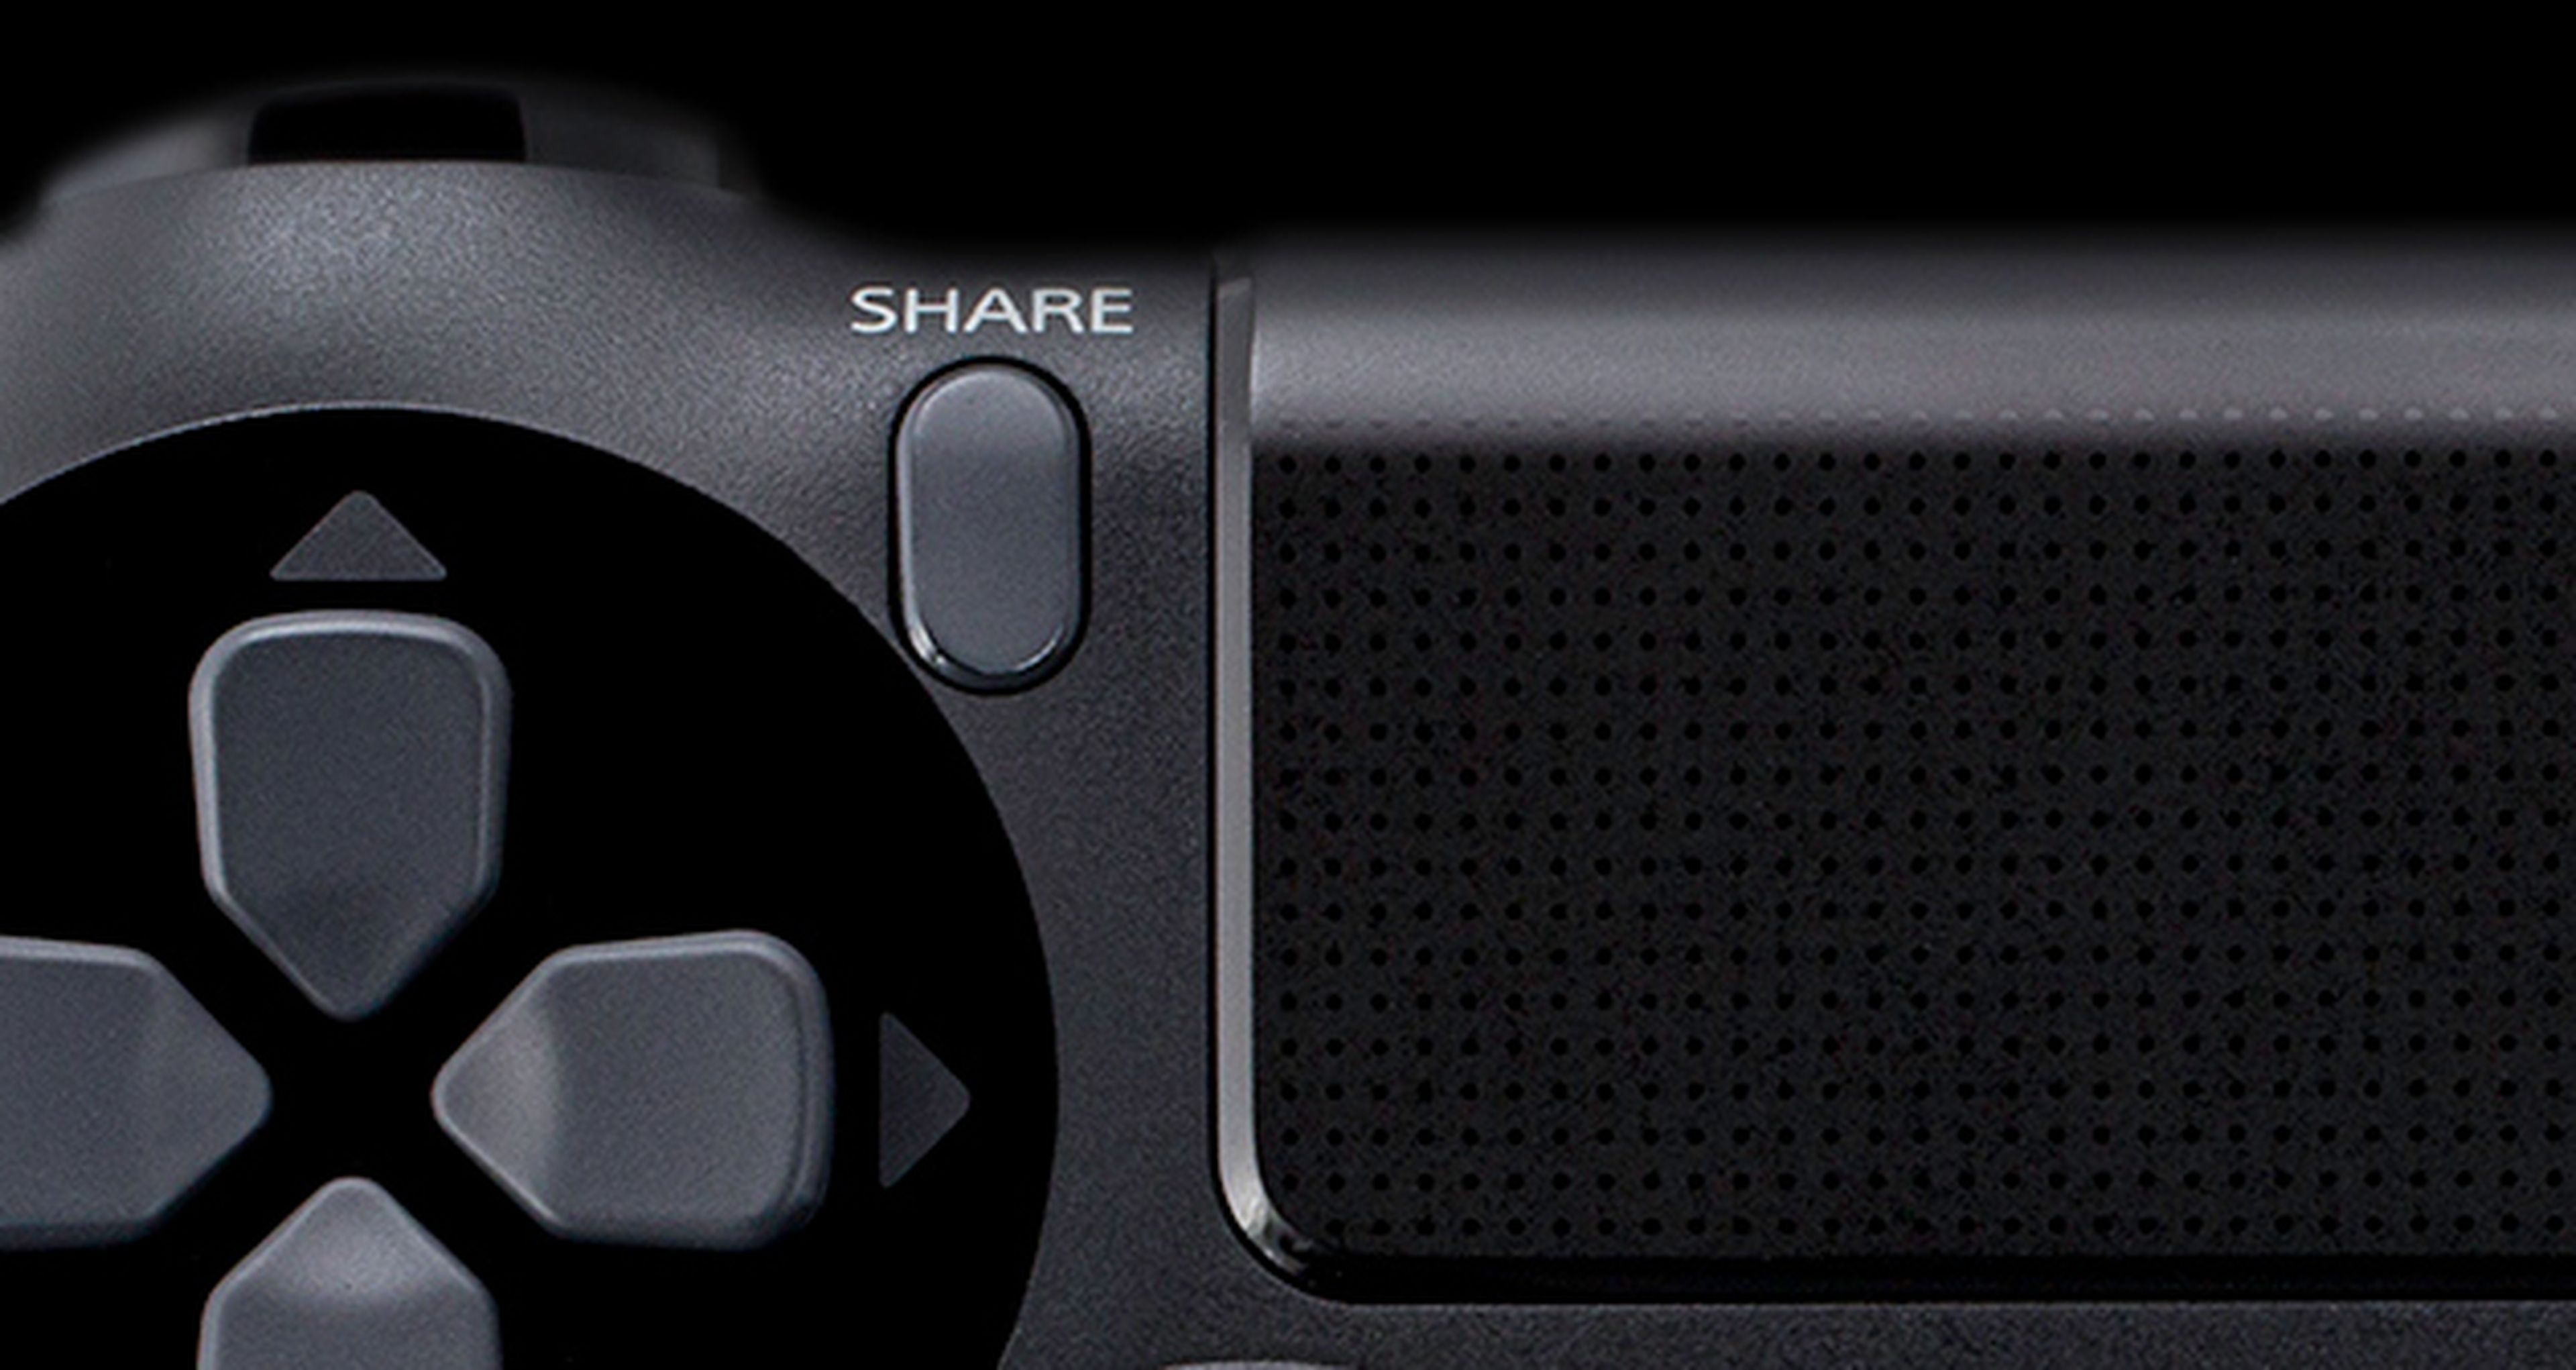 Más sobre el botón 'share' del Dualshock 4